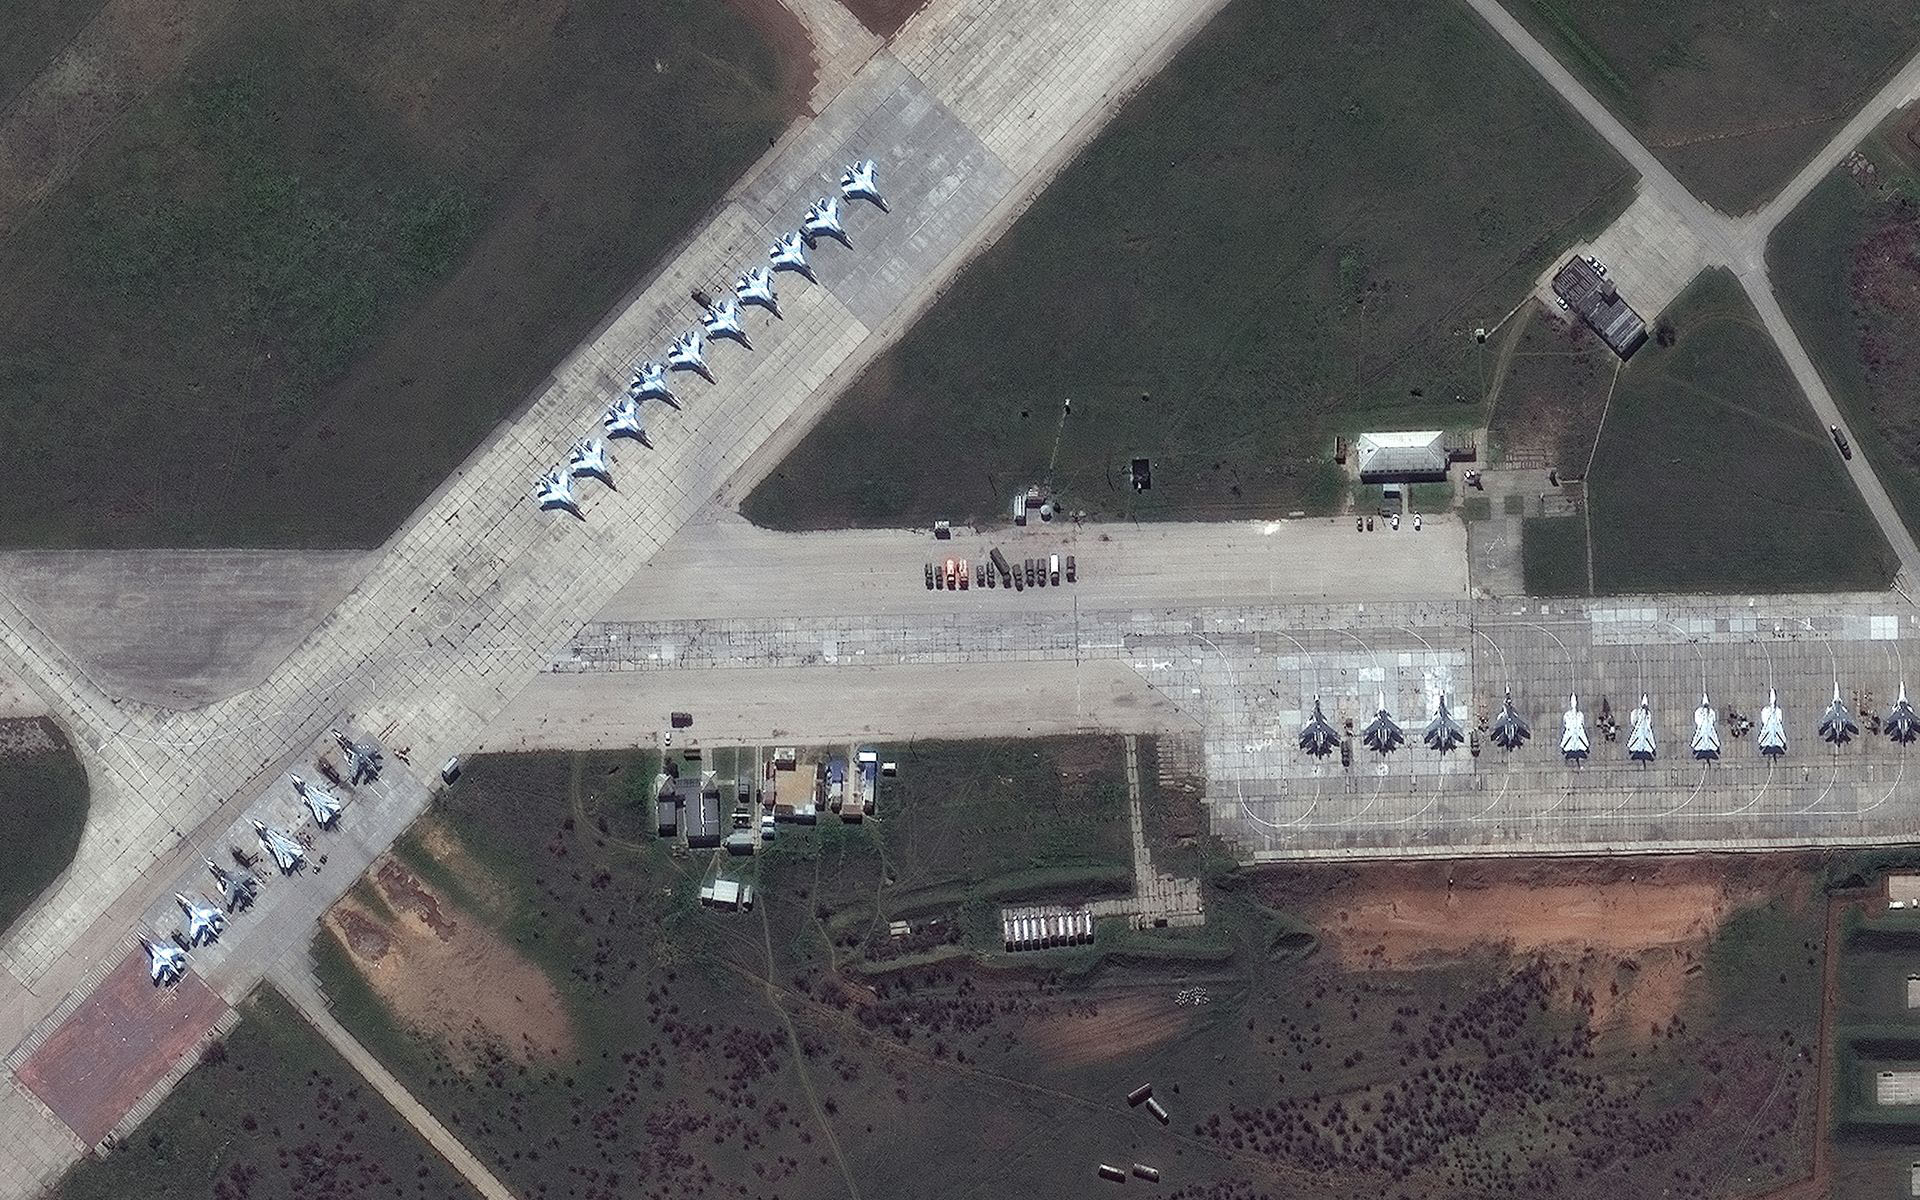 Aviones rusos Su-30 en la base aérea de Saki en Crimea. Imagen de satélite tomada el 16 de abril. (©2021 Maxar Technologies)